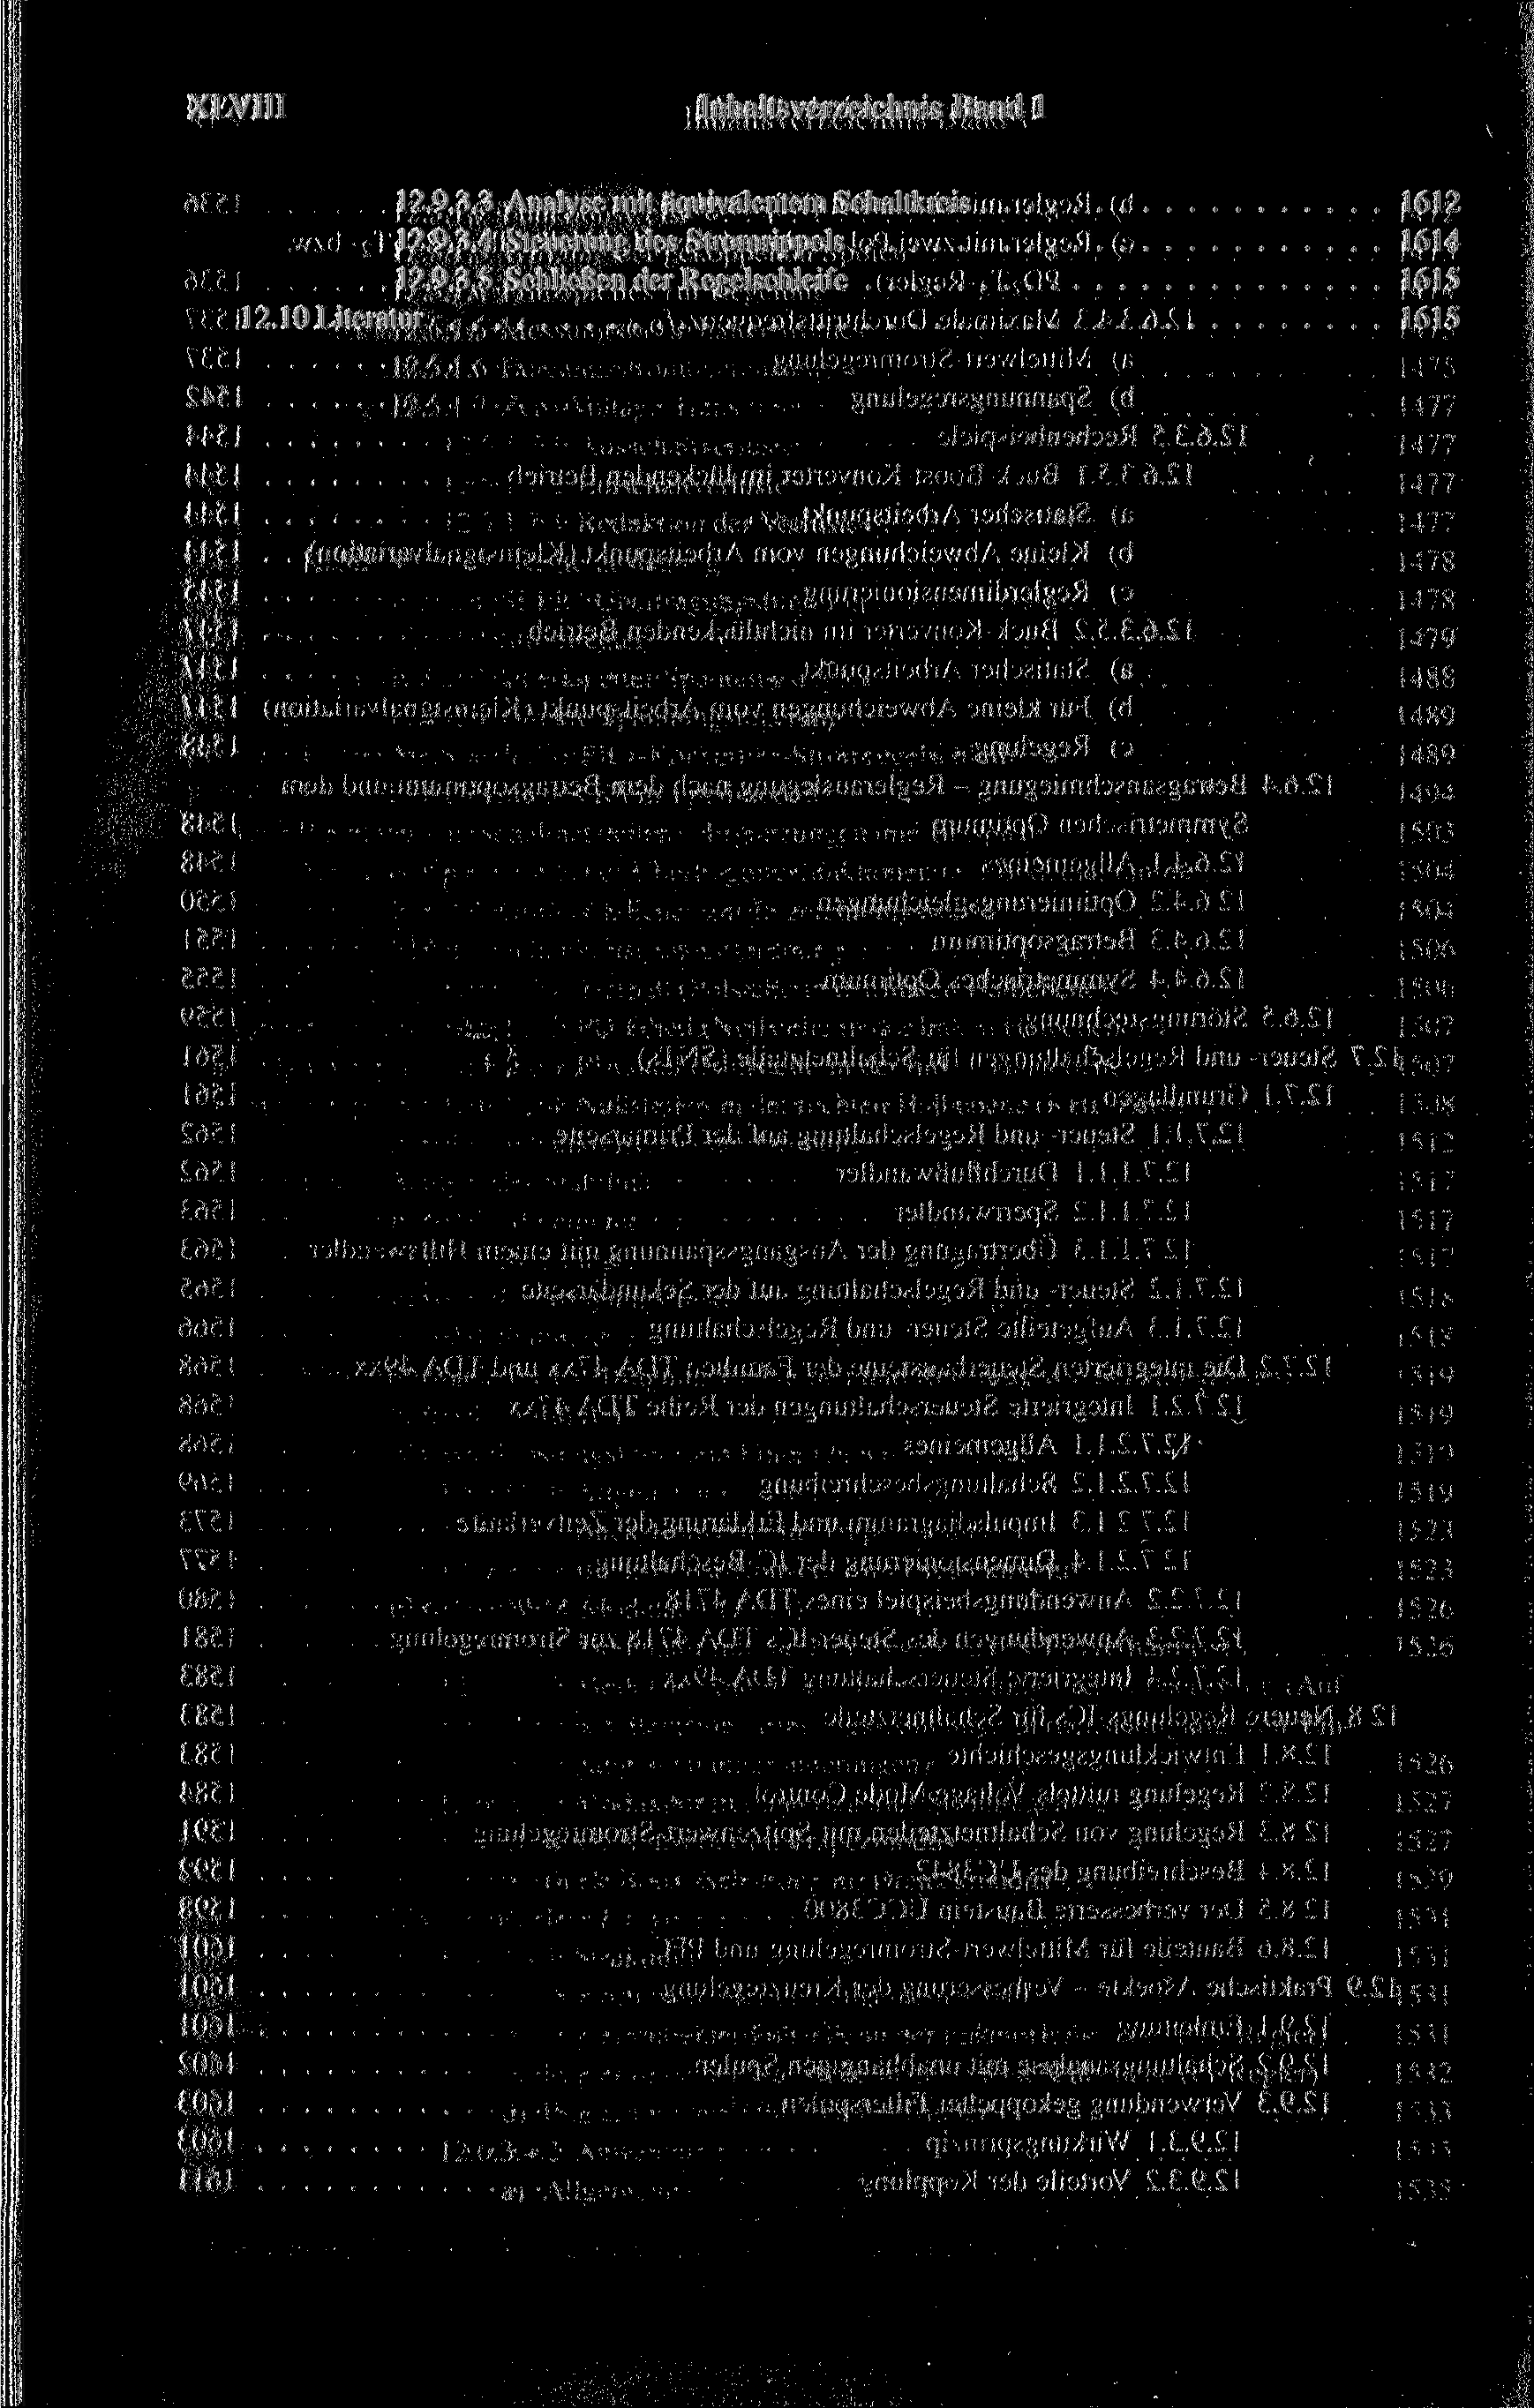 XLVIII Inhaltsverzeichnis Band 1 12.9.3.3 Analyse rait äquivalentem Schaltkreis 1612 12.9.3.4 Steuerung des Stromrippels 1614 12.